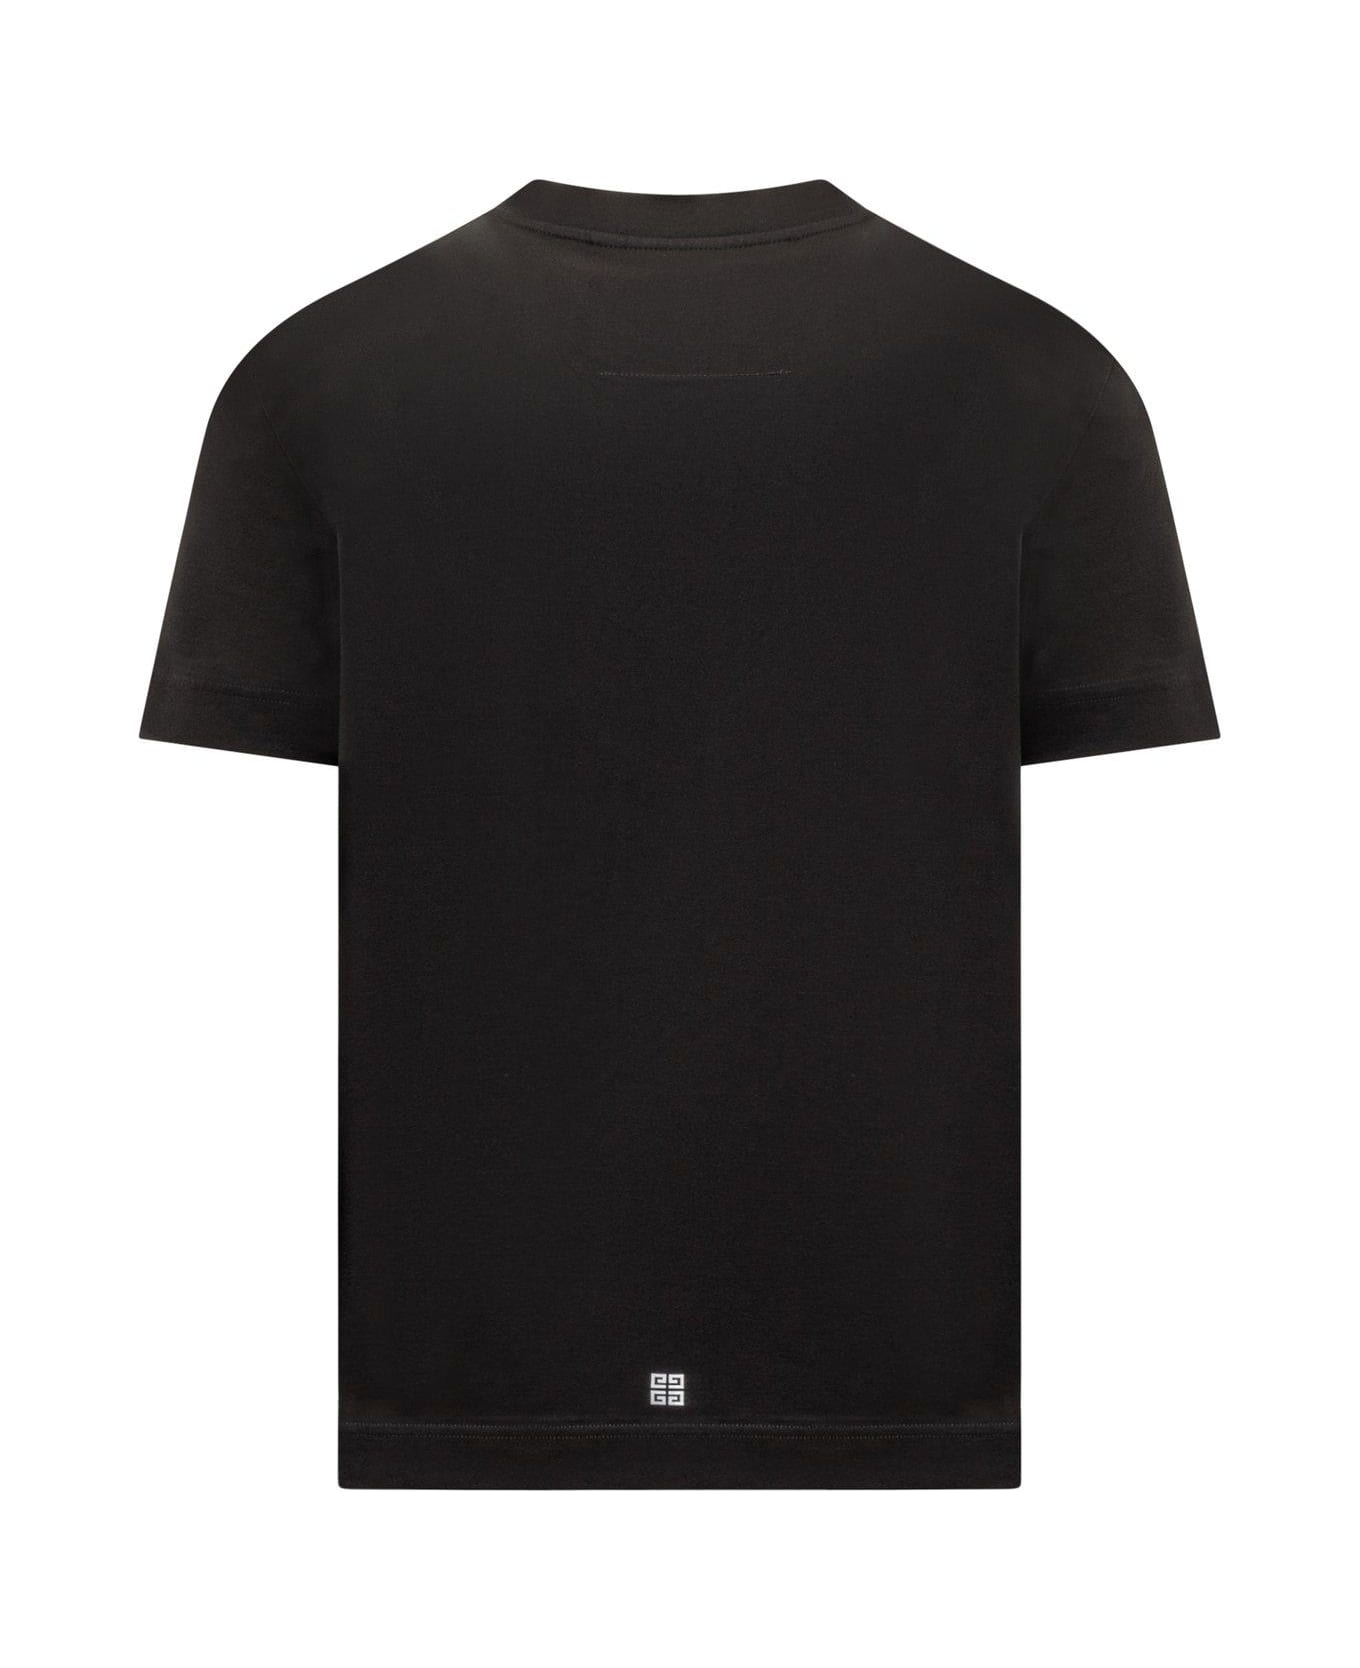 Givenchy Graphic Printed Crewneck T-shirt - BLACK シャツ